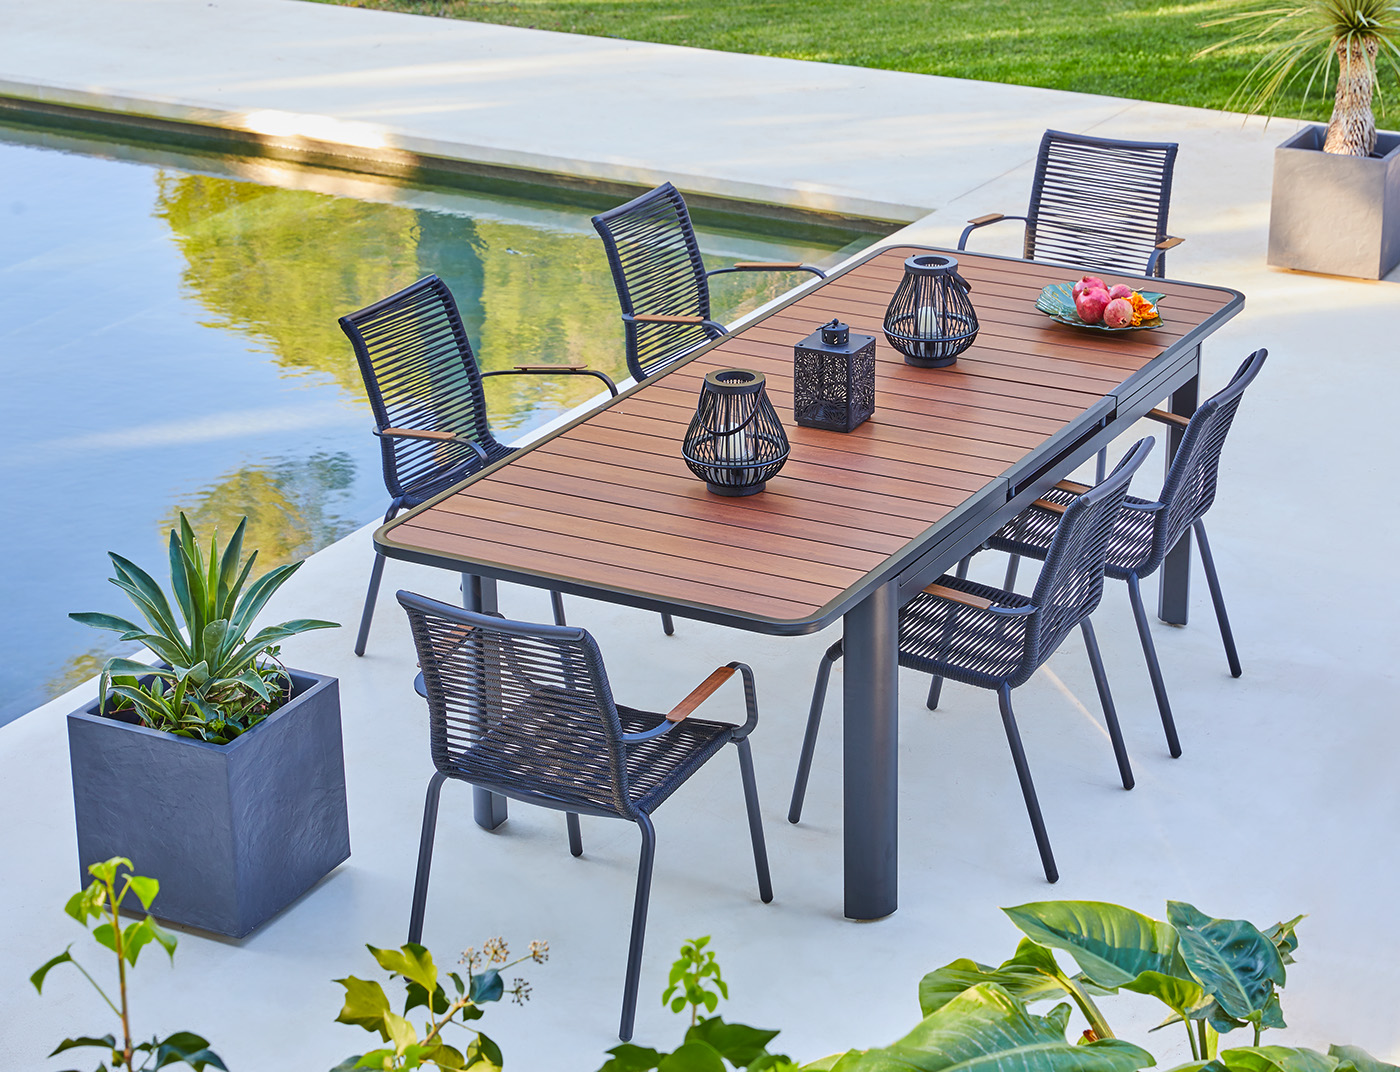 furniture hyba Outdoor armchair chair garden design